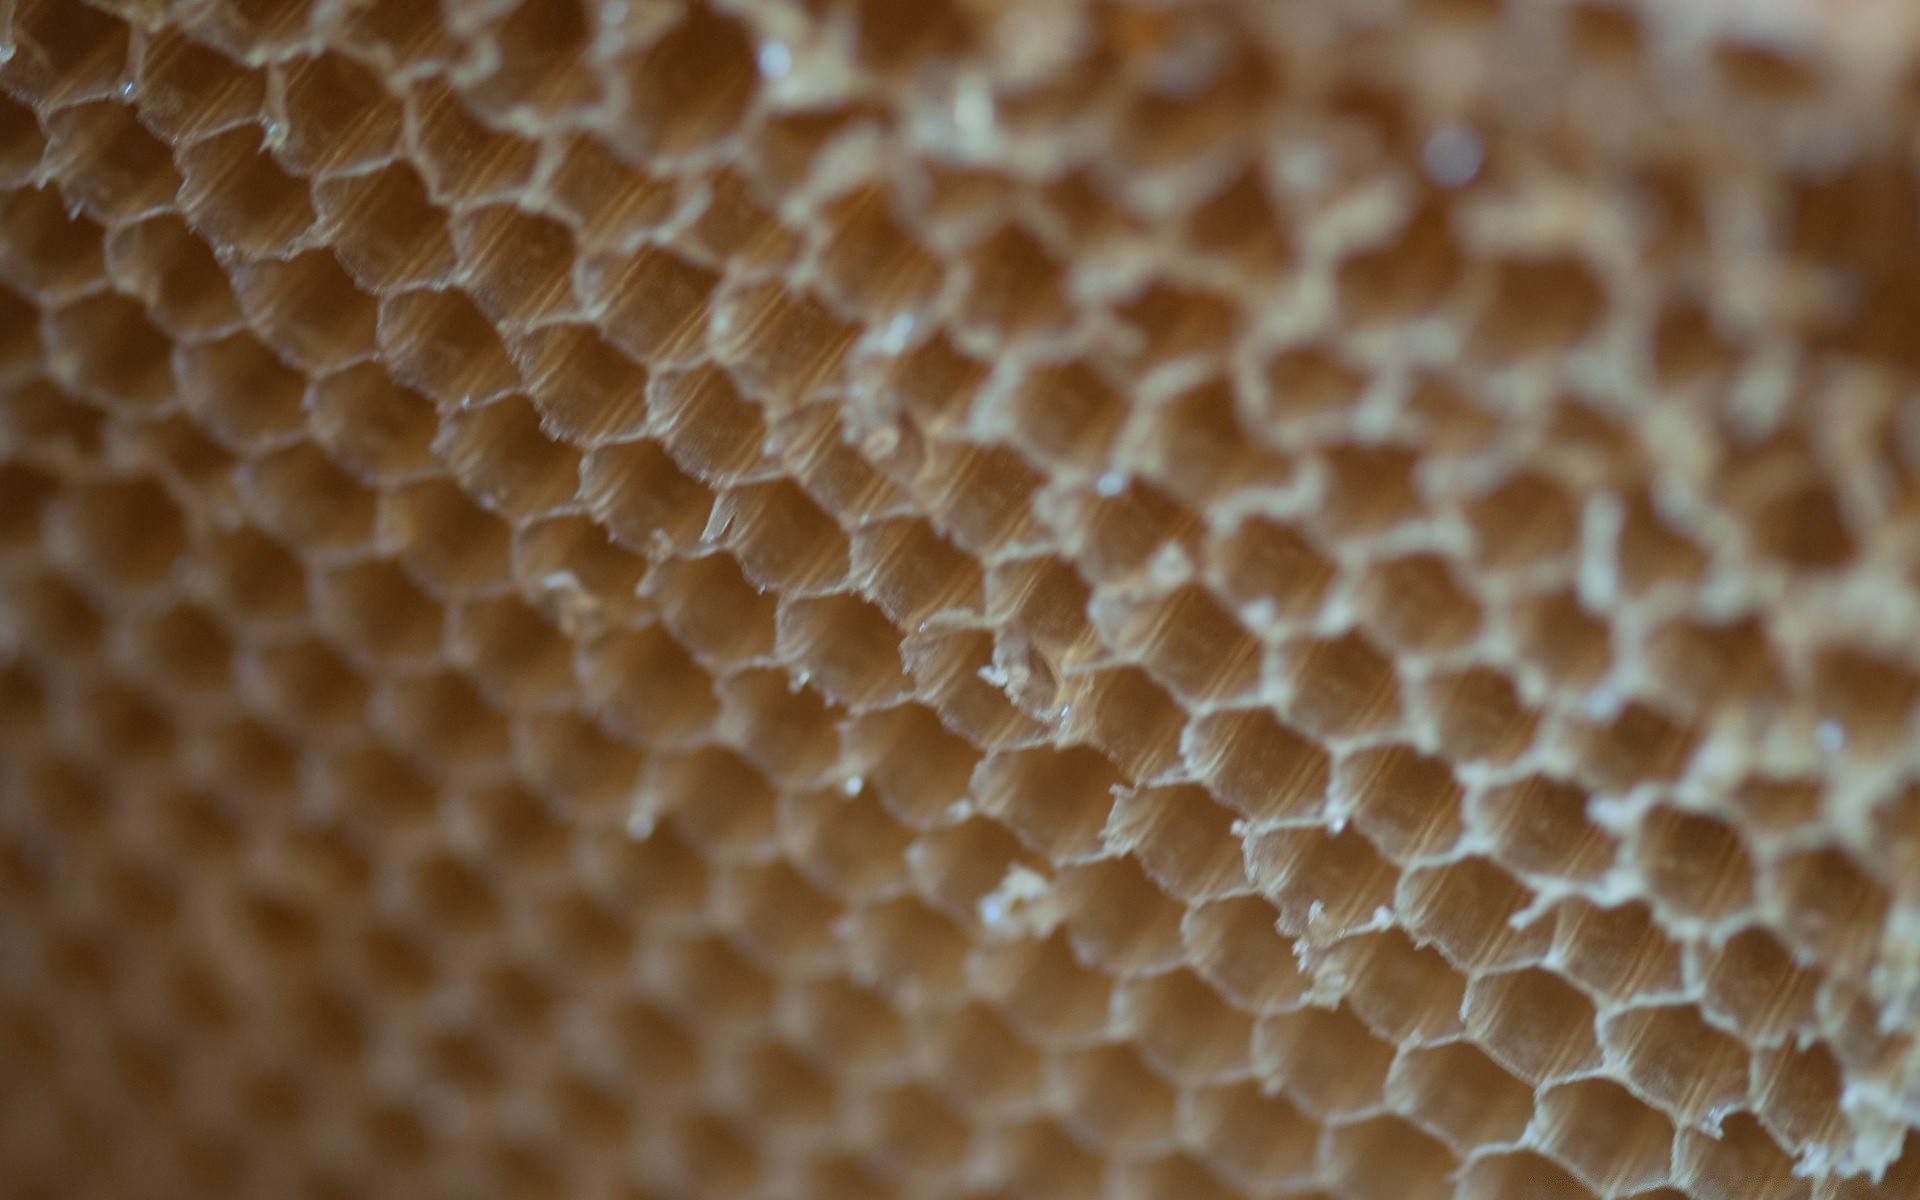 еда и напитки мед сотовый телефон сота пчелка воск пчелиный воск шестигранник улей рабочего стола природа